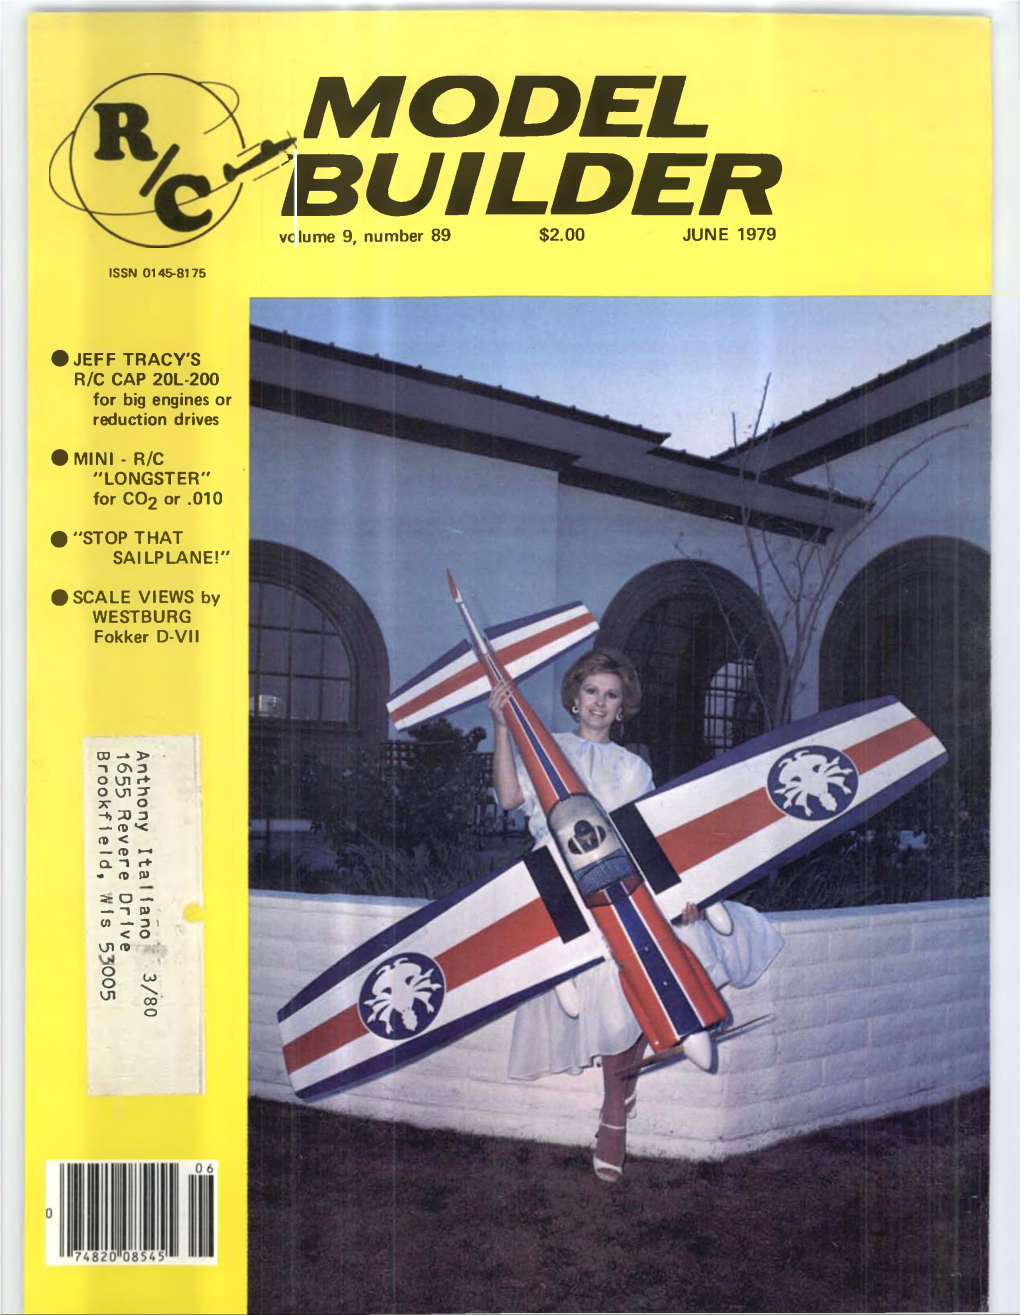 MODEL BUILDER Volume 9, Number 89 $2.00 JUNE 1979